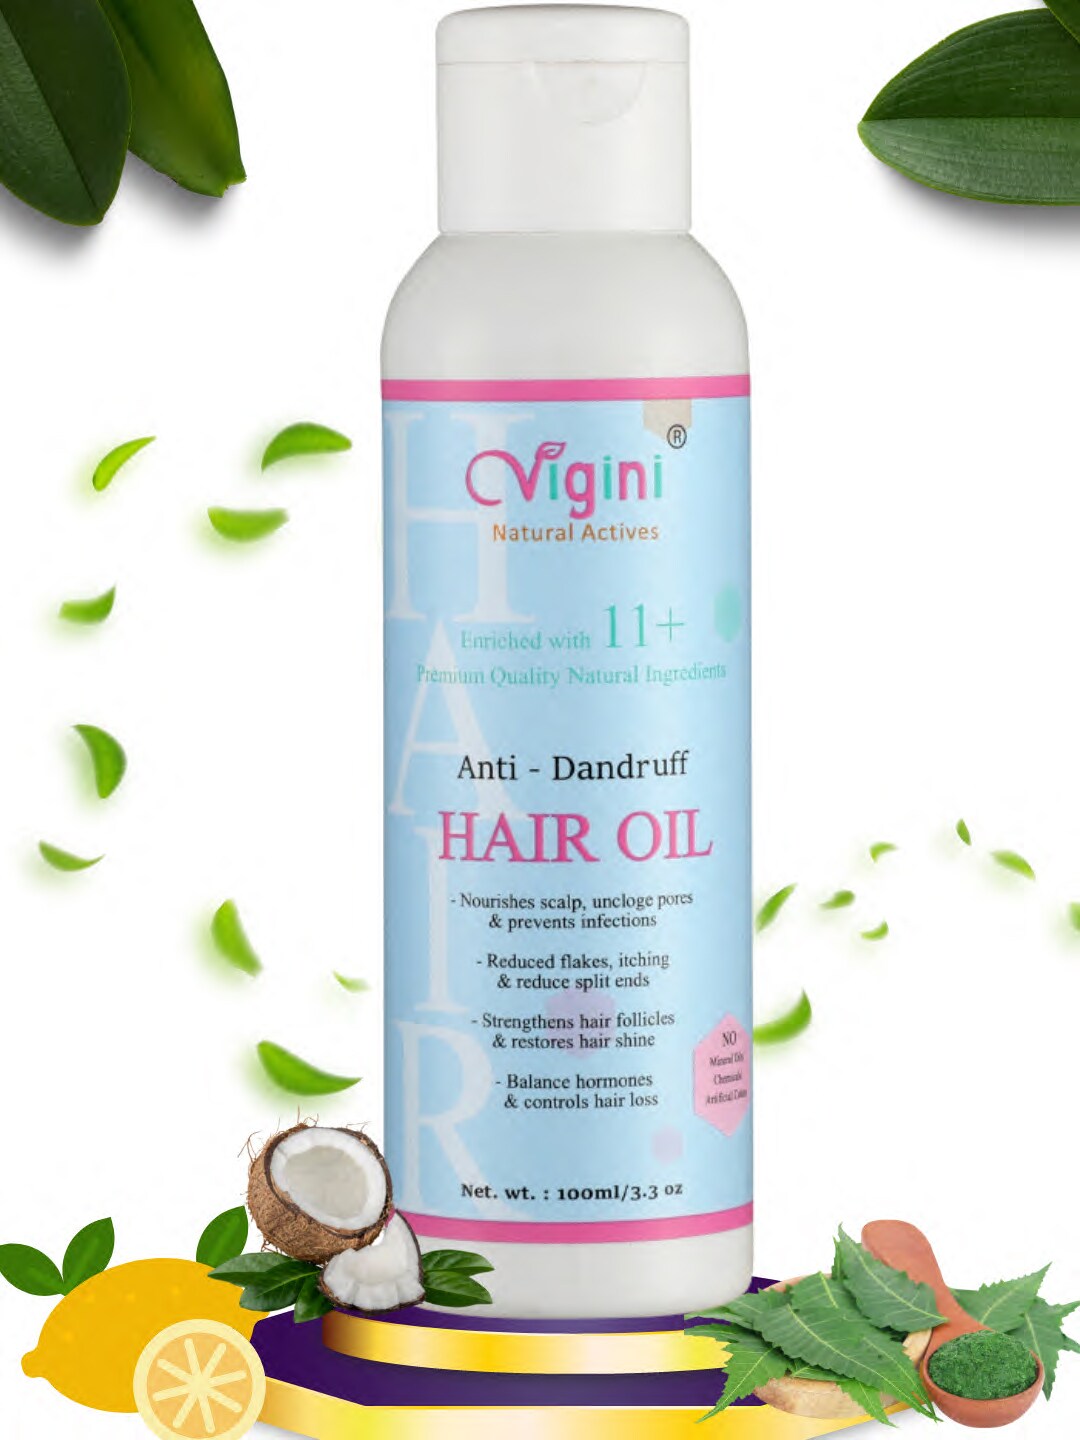 Vigini Anti Dandruff Hair Care Growth Vitalizer with Coconut Cream Oil 100ml Price in India